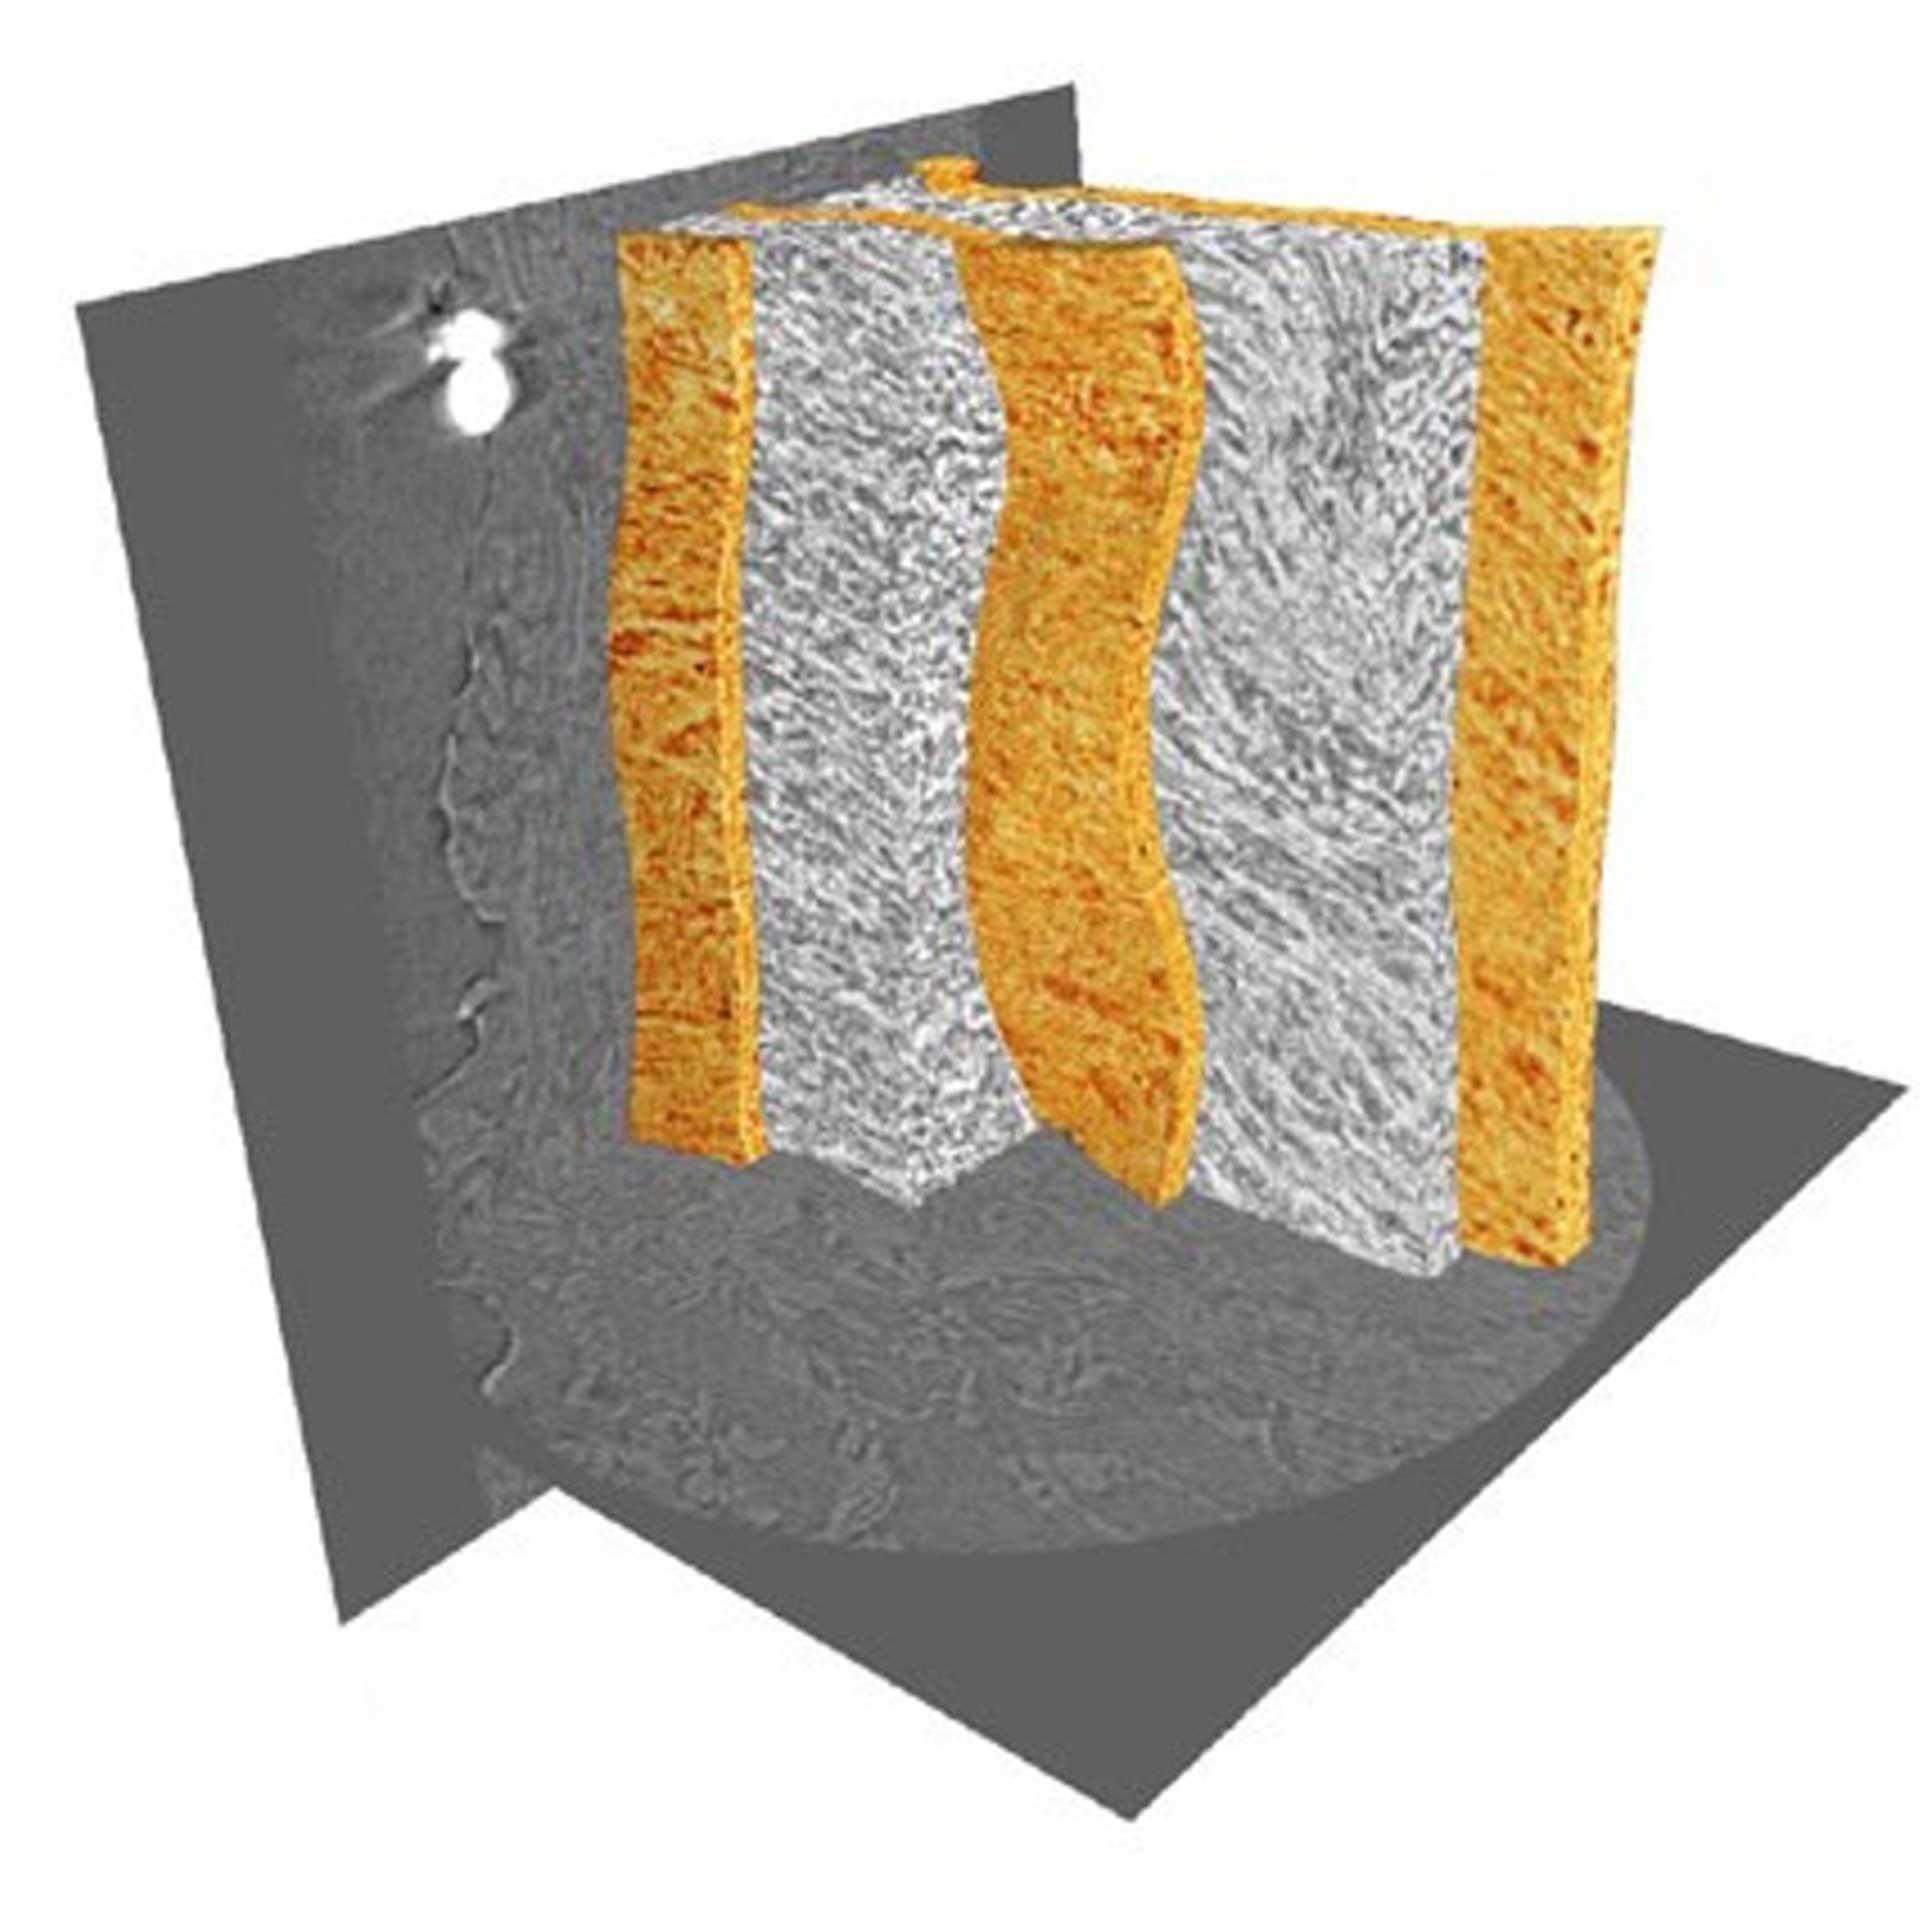 未染色的小鼠动脉壁组织中的弹性层（橙色）和层间区域。使用Xradia 800 Ultra成像。图像提供者：英国曼彻斯特大学（样品宽度90 µm）。